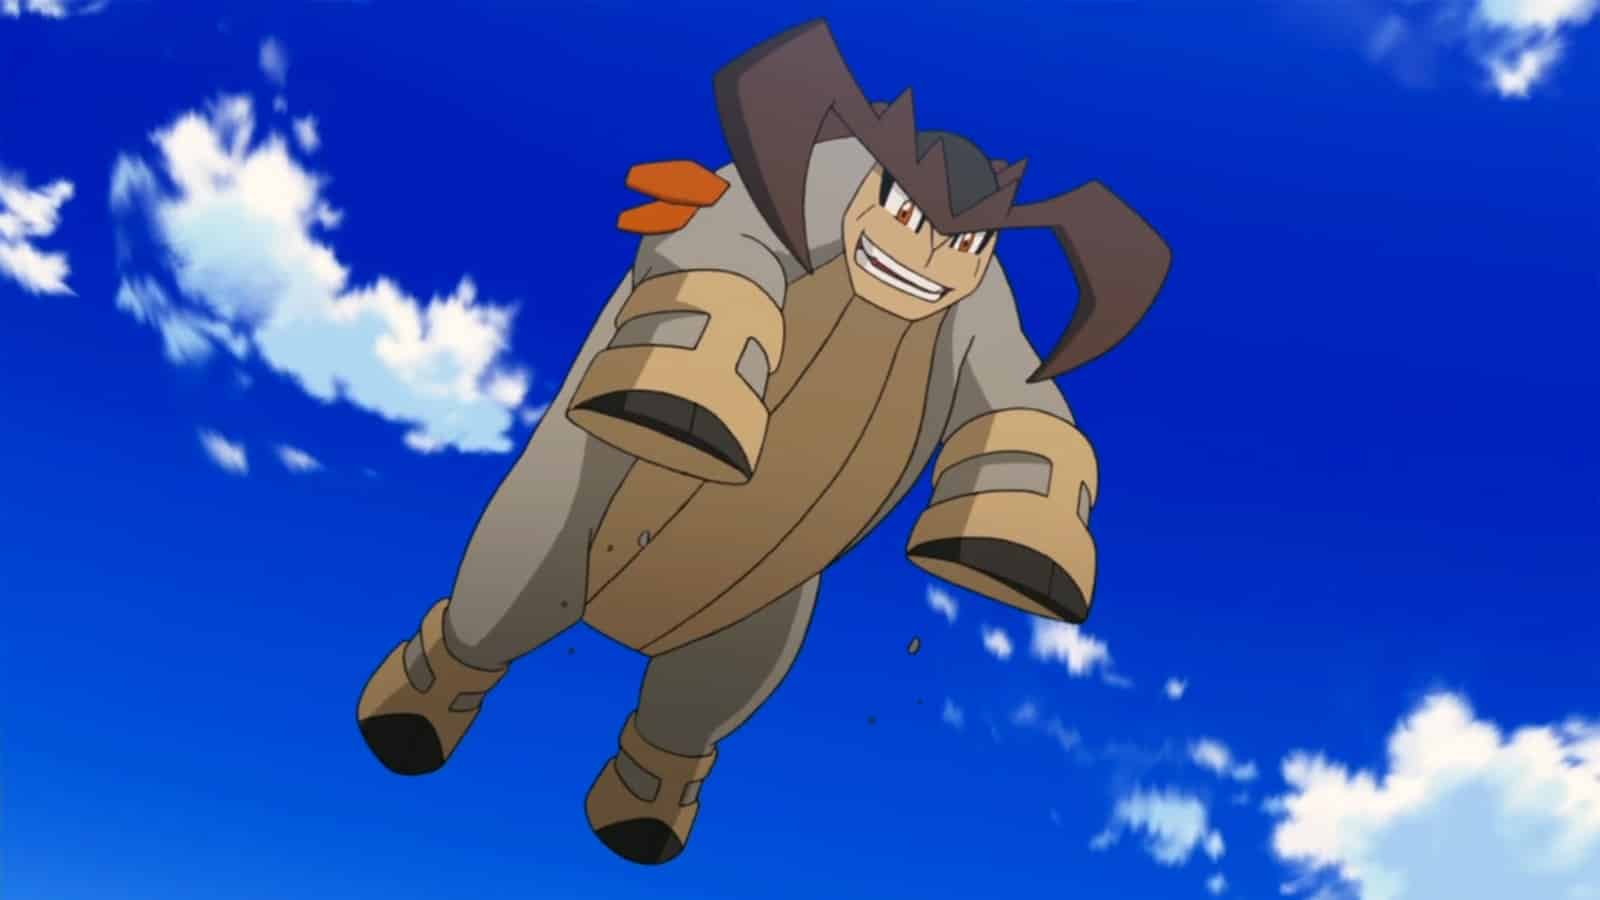 Pokémon Go - Raid de Terrakion - counters, fraquezas e ataques